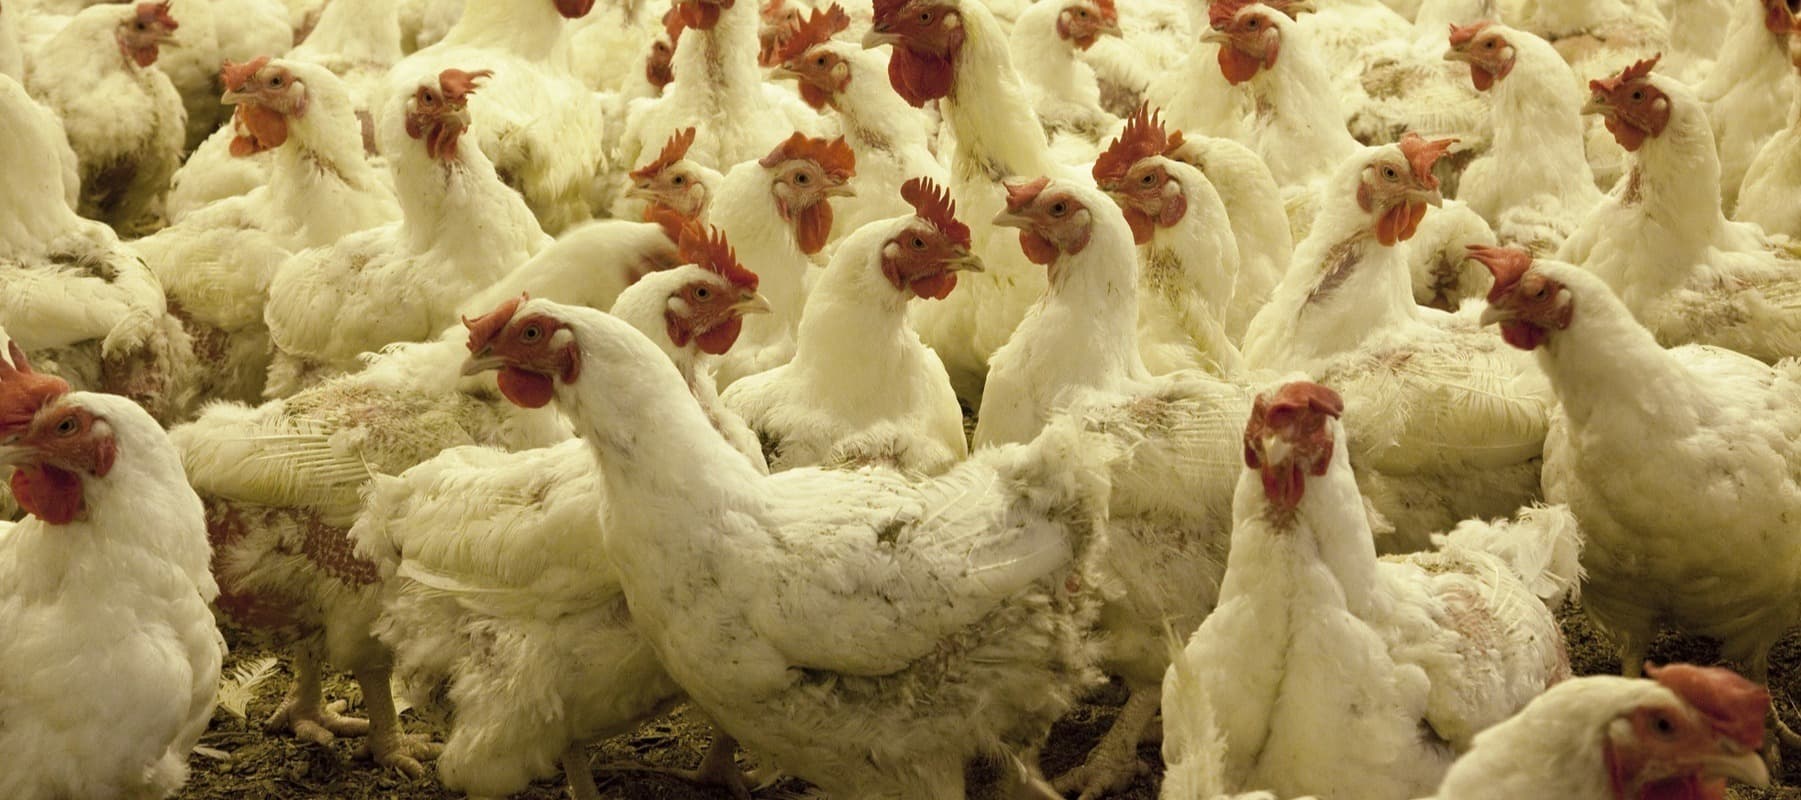 Фото новости: "Минсельхоз предложил ввести беспошлинную квоту на импорт курятины в размере 160 000 т"